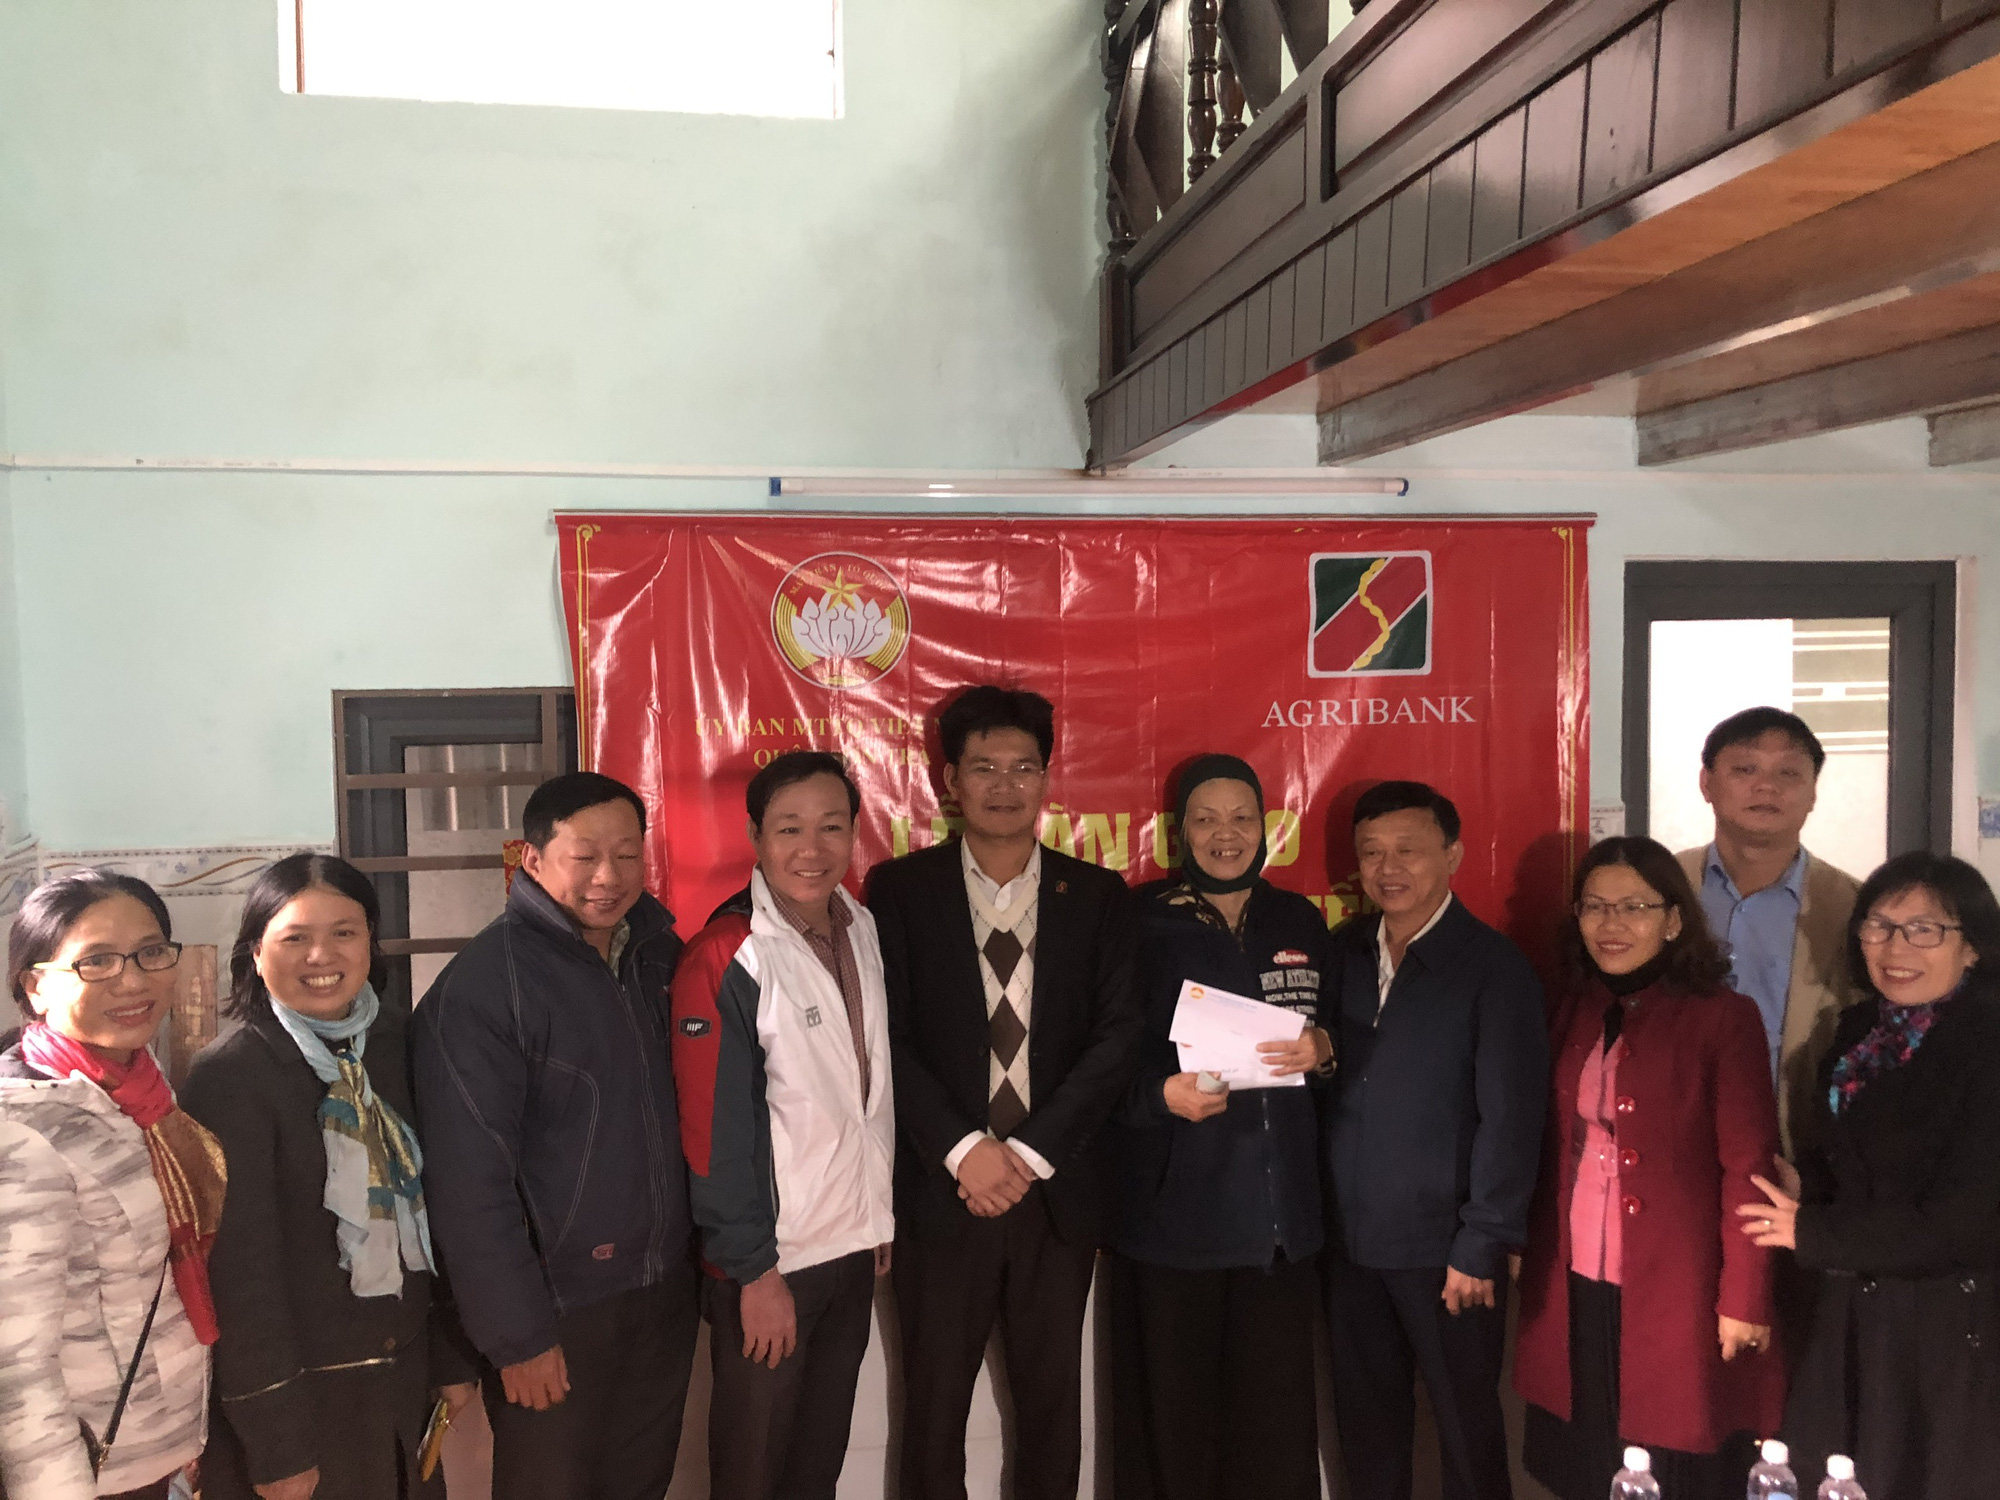 Đà Nẵng: Agribank Sơn Trà tài trợ xây dựng nhà đại đoàn kết cho gia đình khó khăn - Ảnh 2.